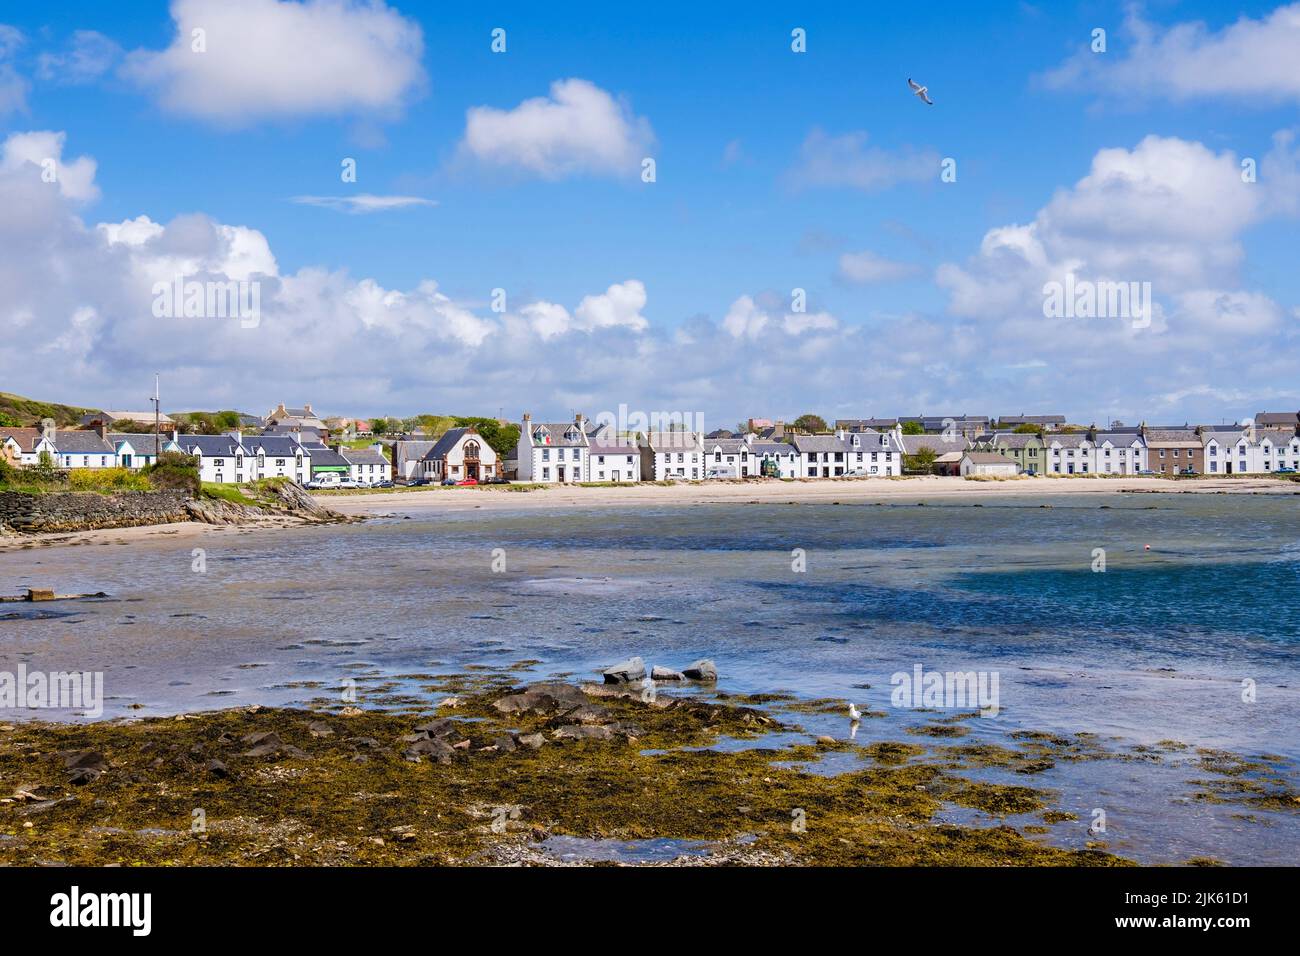 Blick über die Leodamais Bay auf Häuser am Wasser. Port Ellen, Isle of Islay, Argyll and Bute, Inner Hebrides, Schottland, Großbritannien, Großbritannien Stockfoto